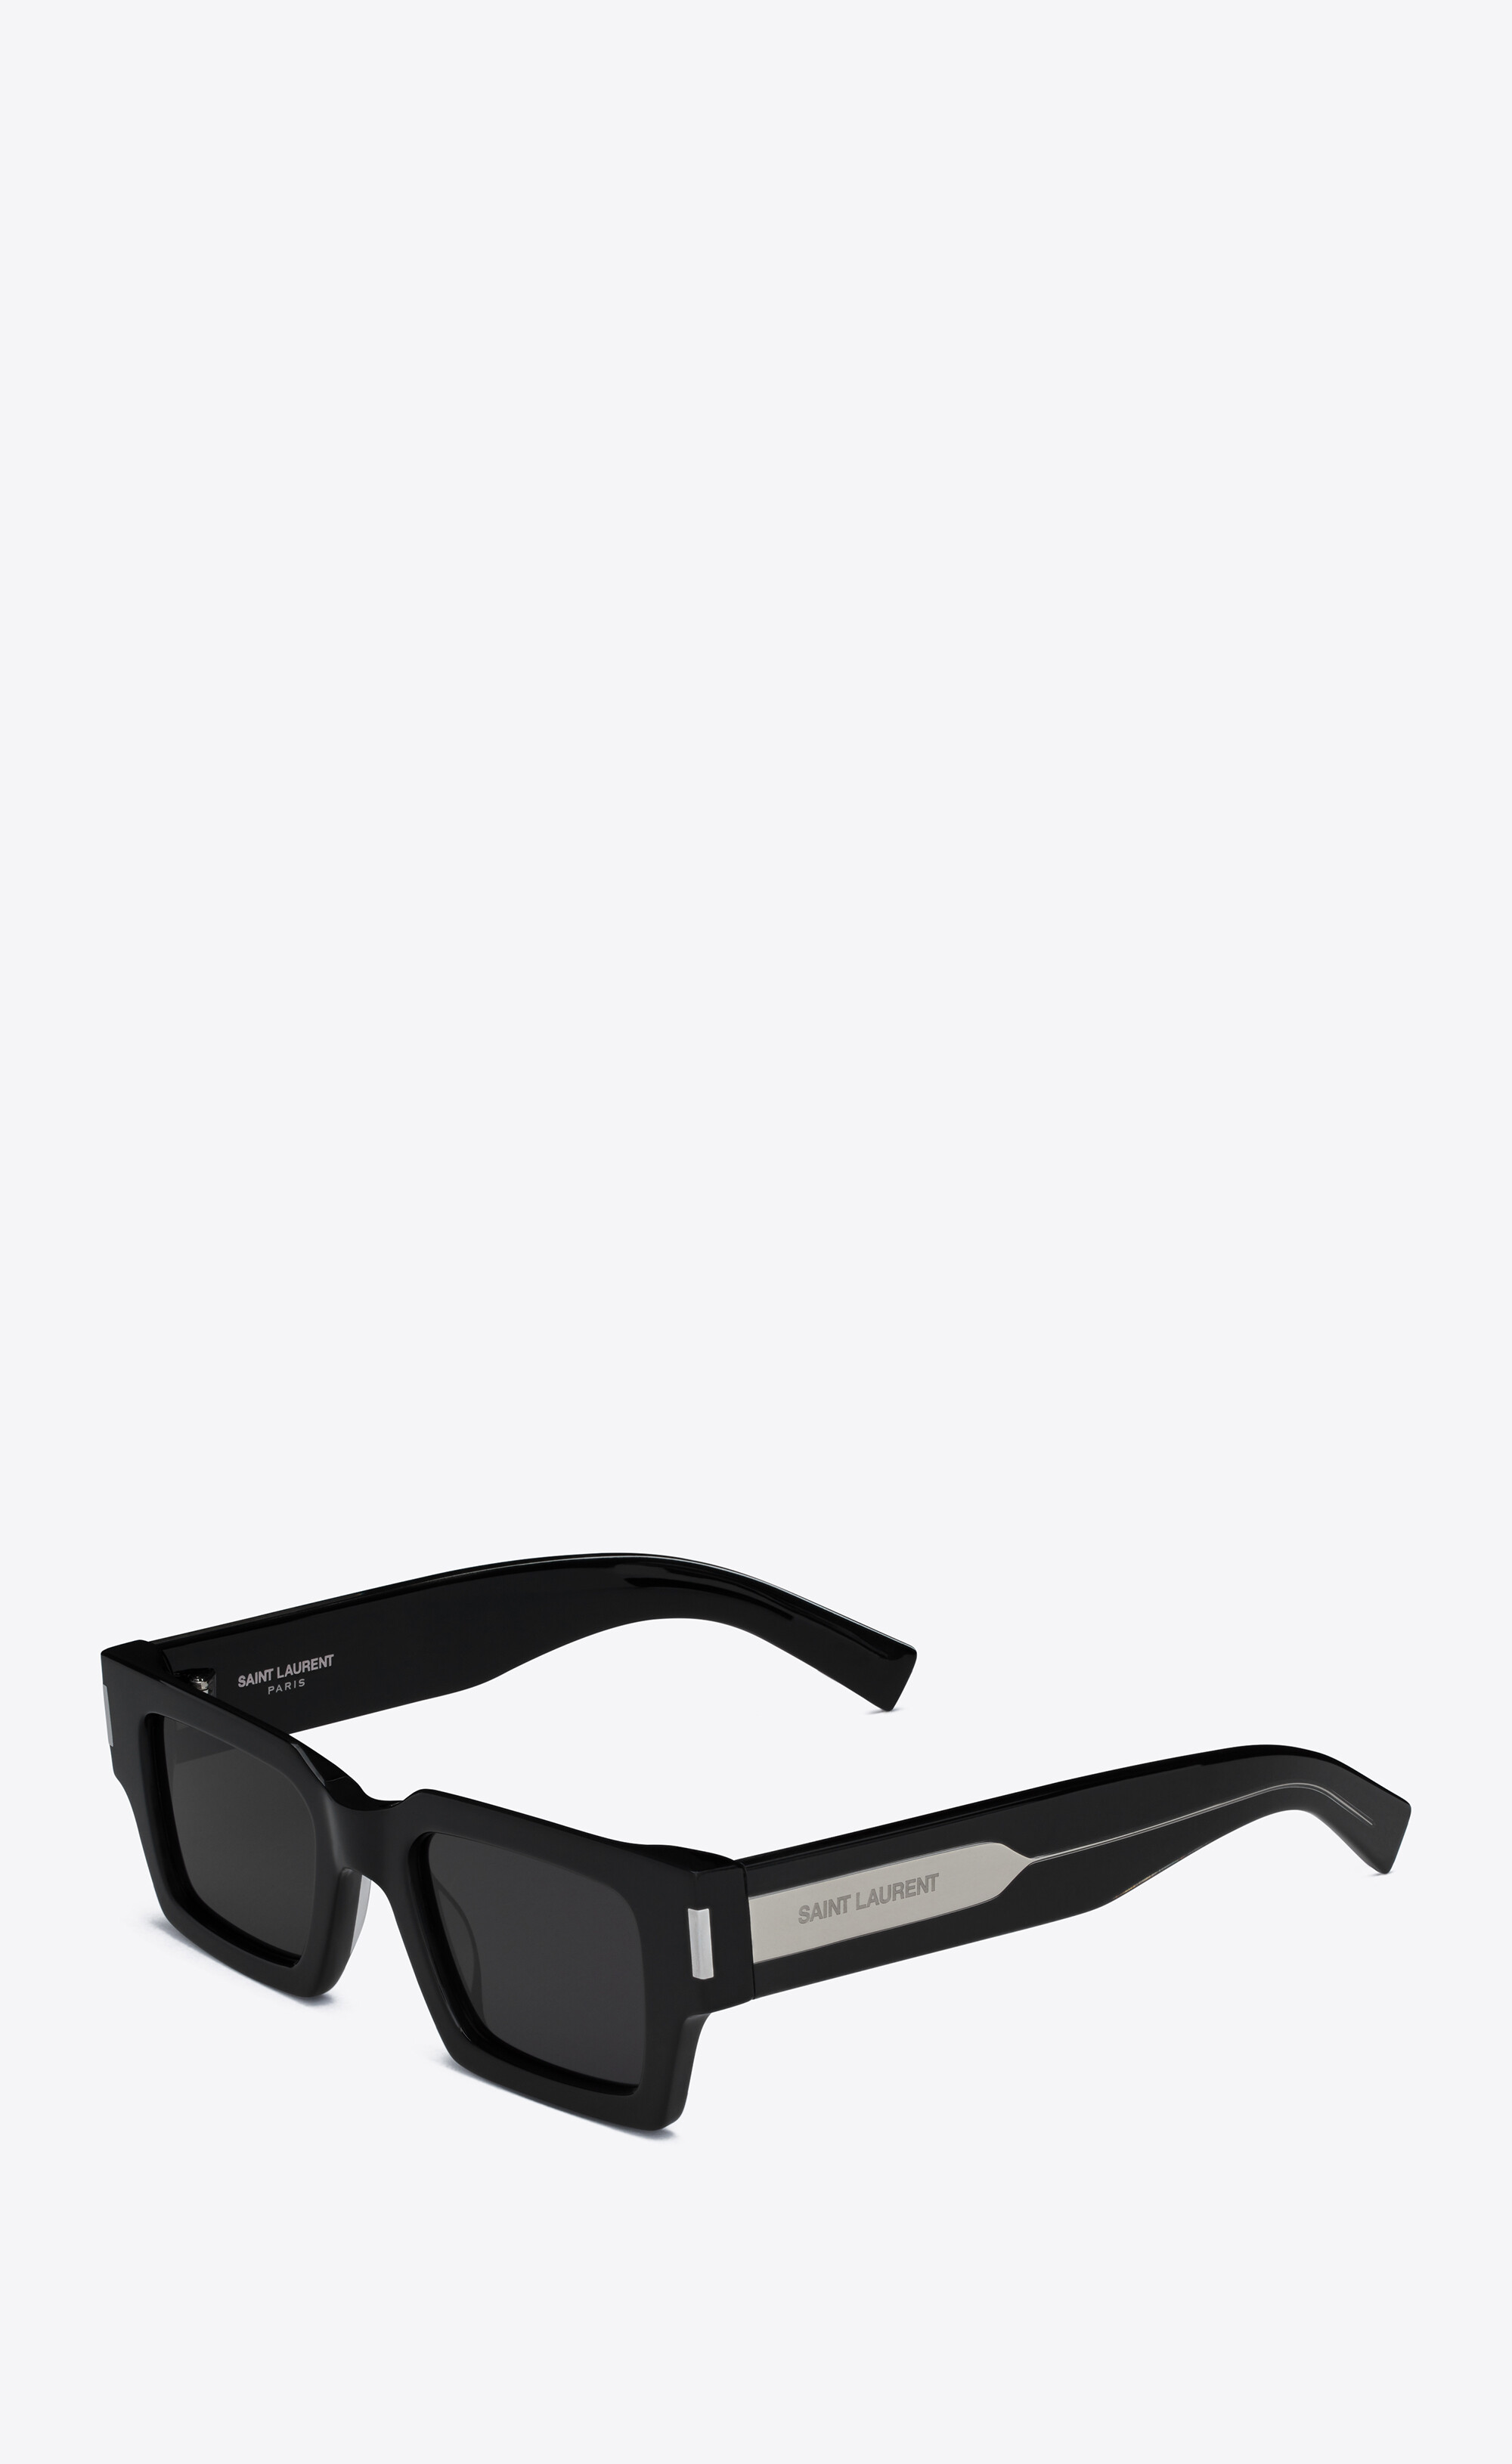 Saint Laurent SL 572 002 Sunglasses for Men and Women – LookerOnline